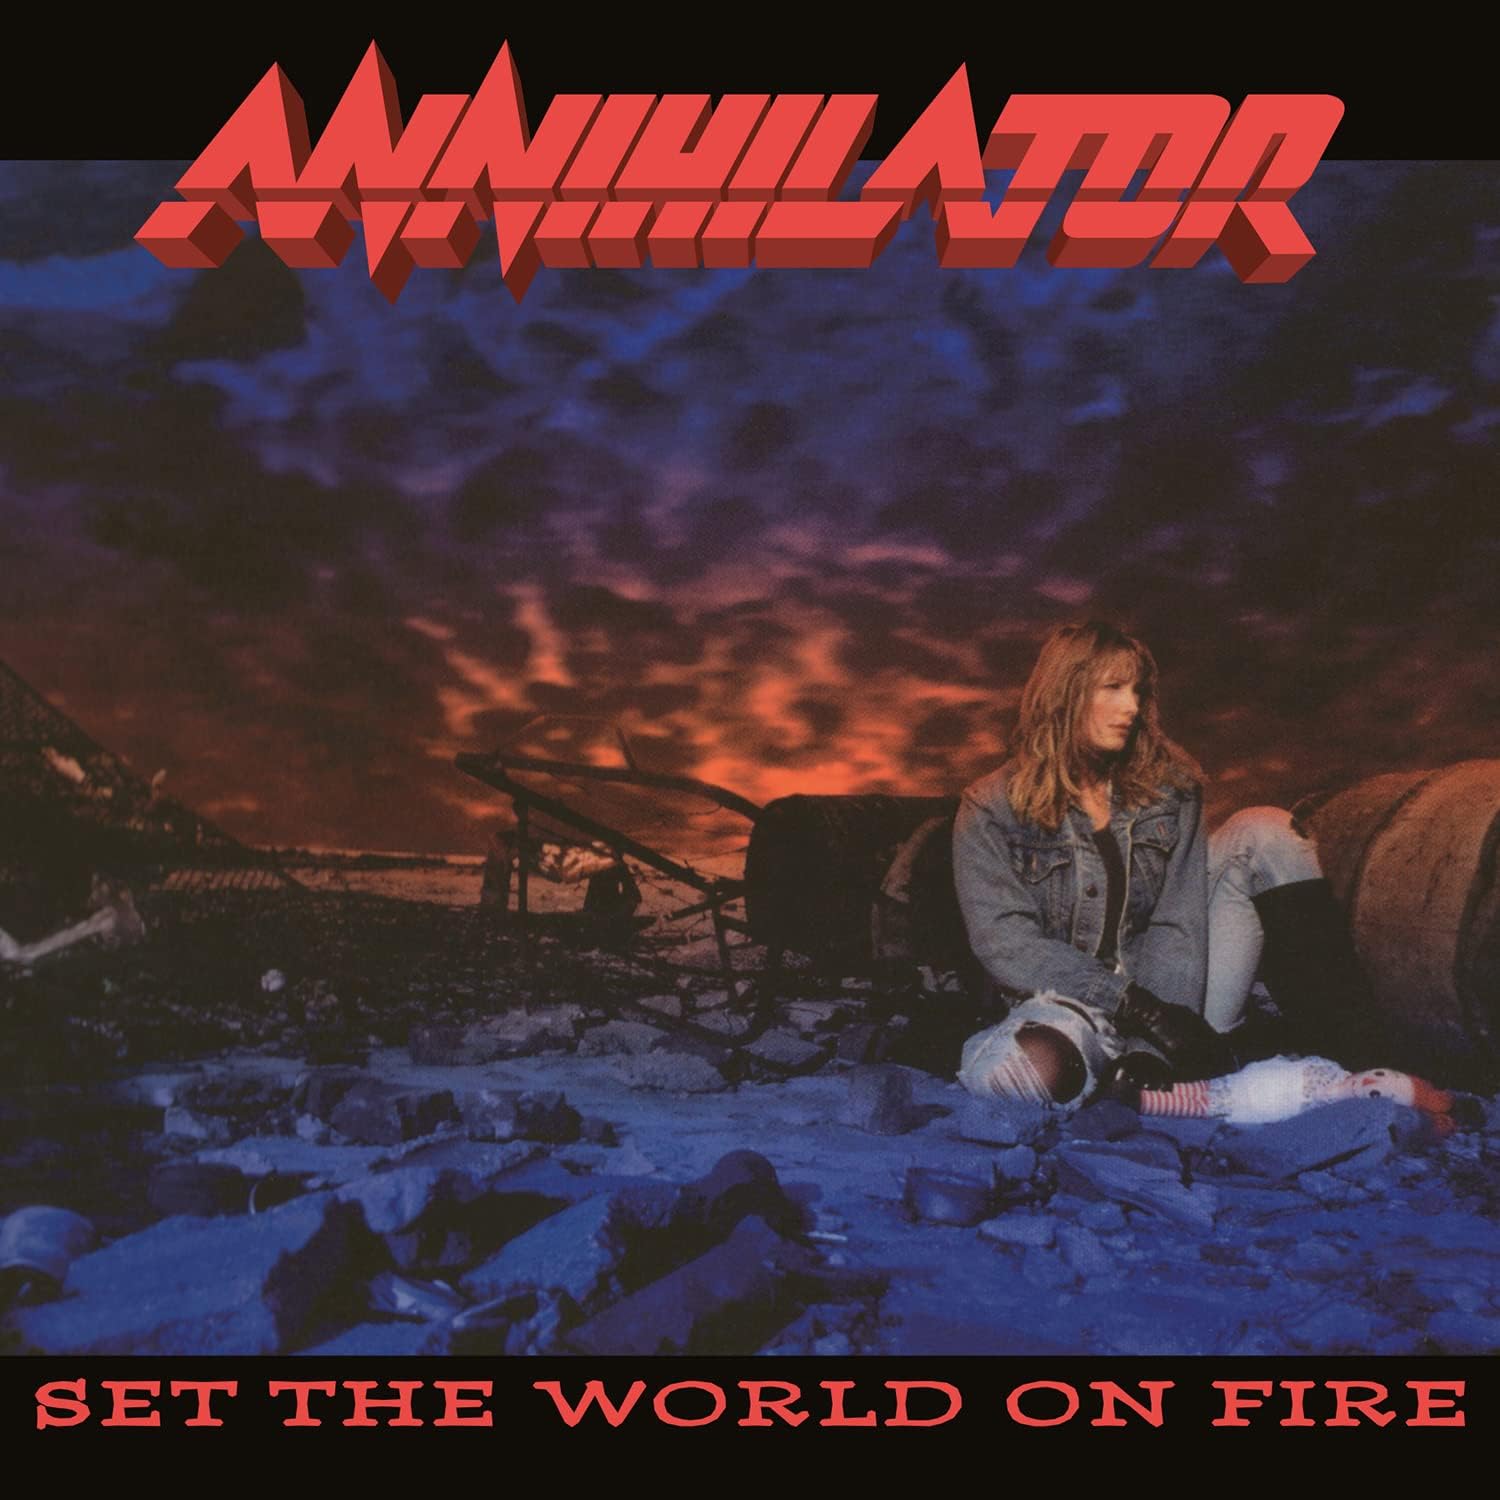 Annihilator "Set The World On Fire" 180g Black Vinyl